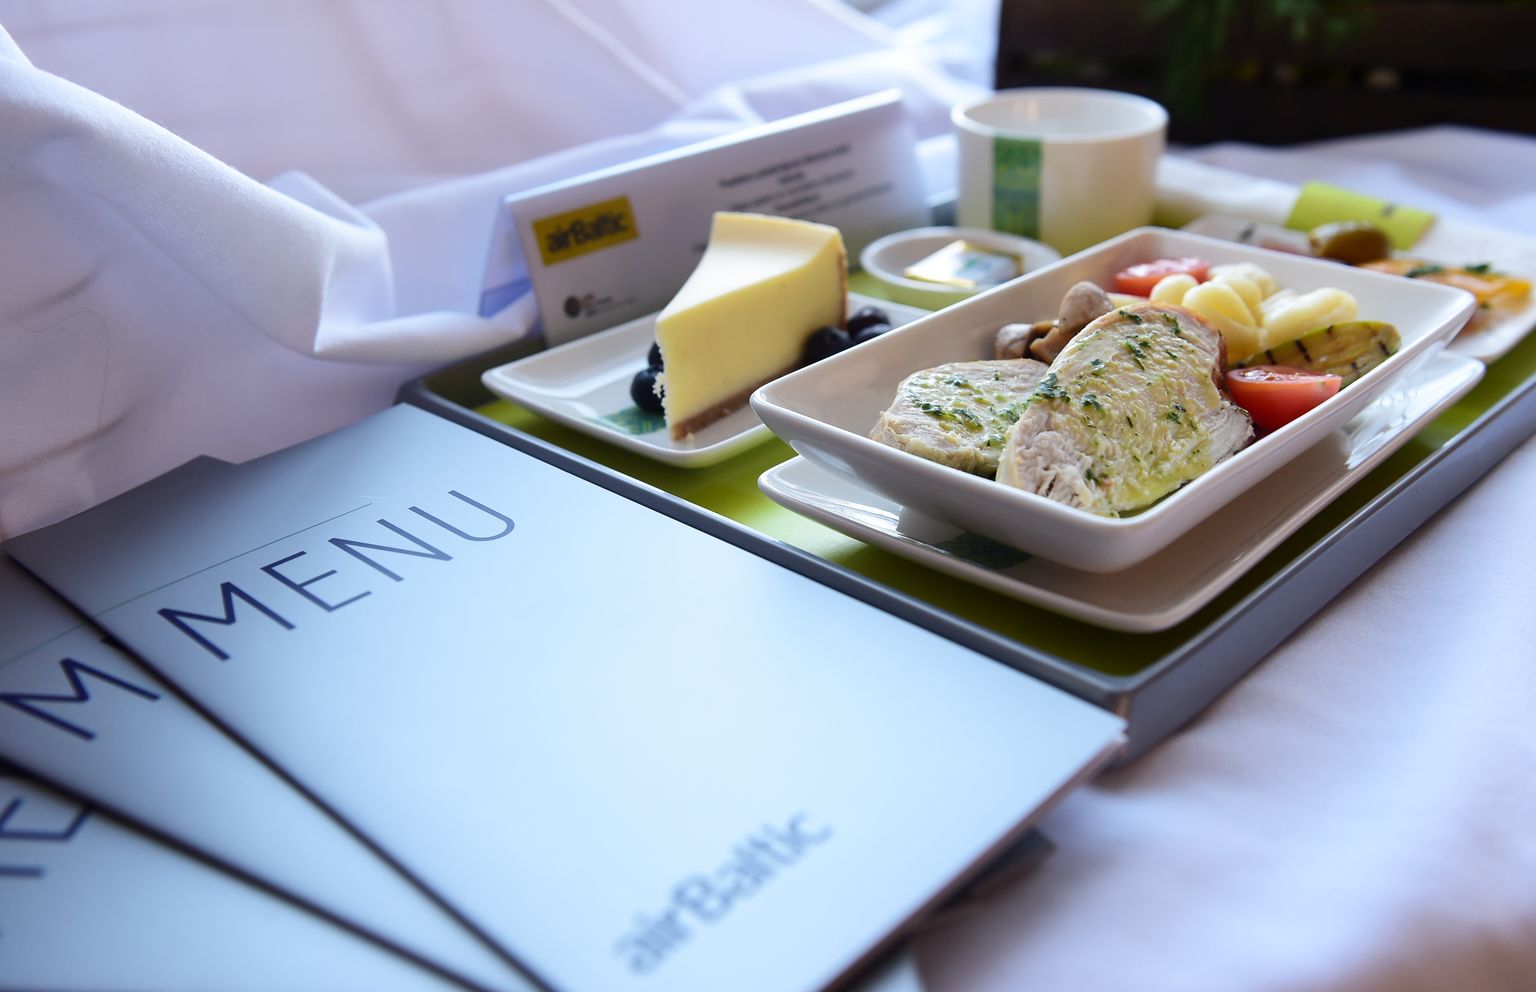 Блюда весеннего меню airBaltic в 2016 году. Фото носит иллюстративный характер.